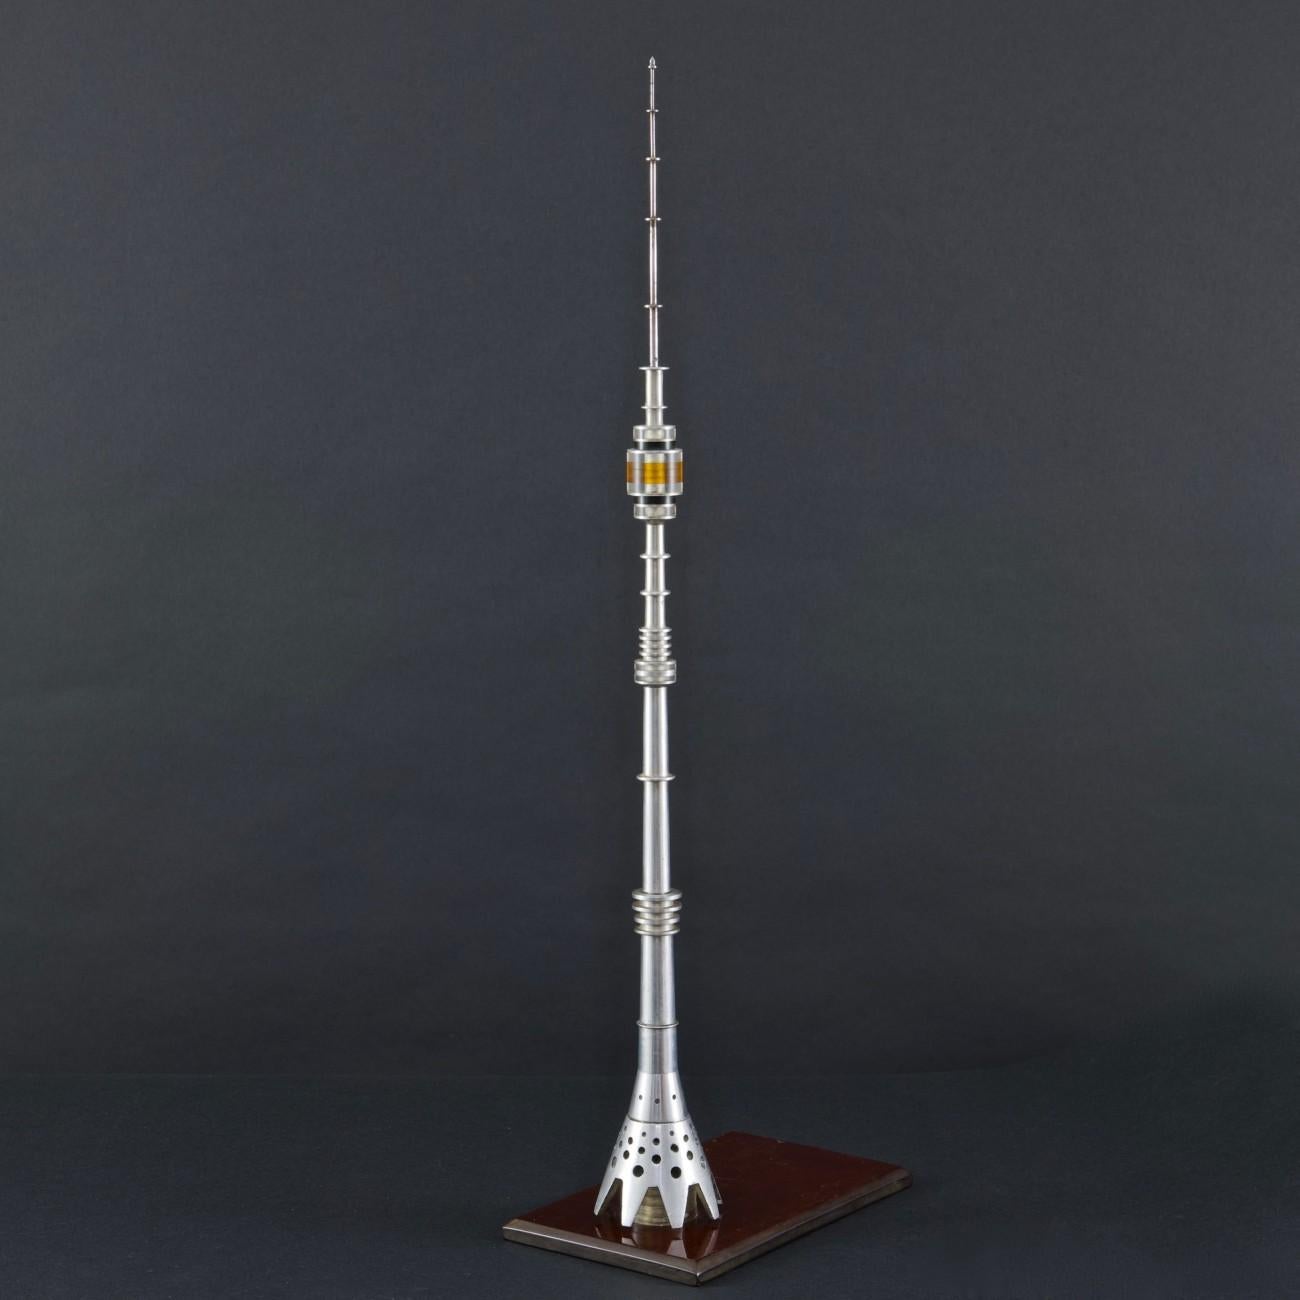 Architekturmodell des Ostankino-Turms, eines Radio- und Fernsehturms in Moskau, der bei seiner Fertigstellung im Jahr 1967 eine Rekordhöhe von 540,1 m (1.772 ft) erreichte.
Das Modell besteht hauptsächlich aus präzisionsgedrehten Teilen aus